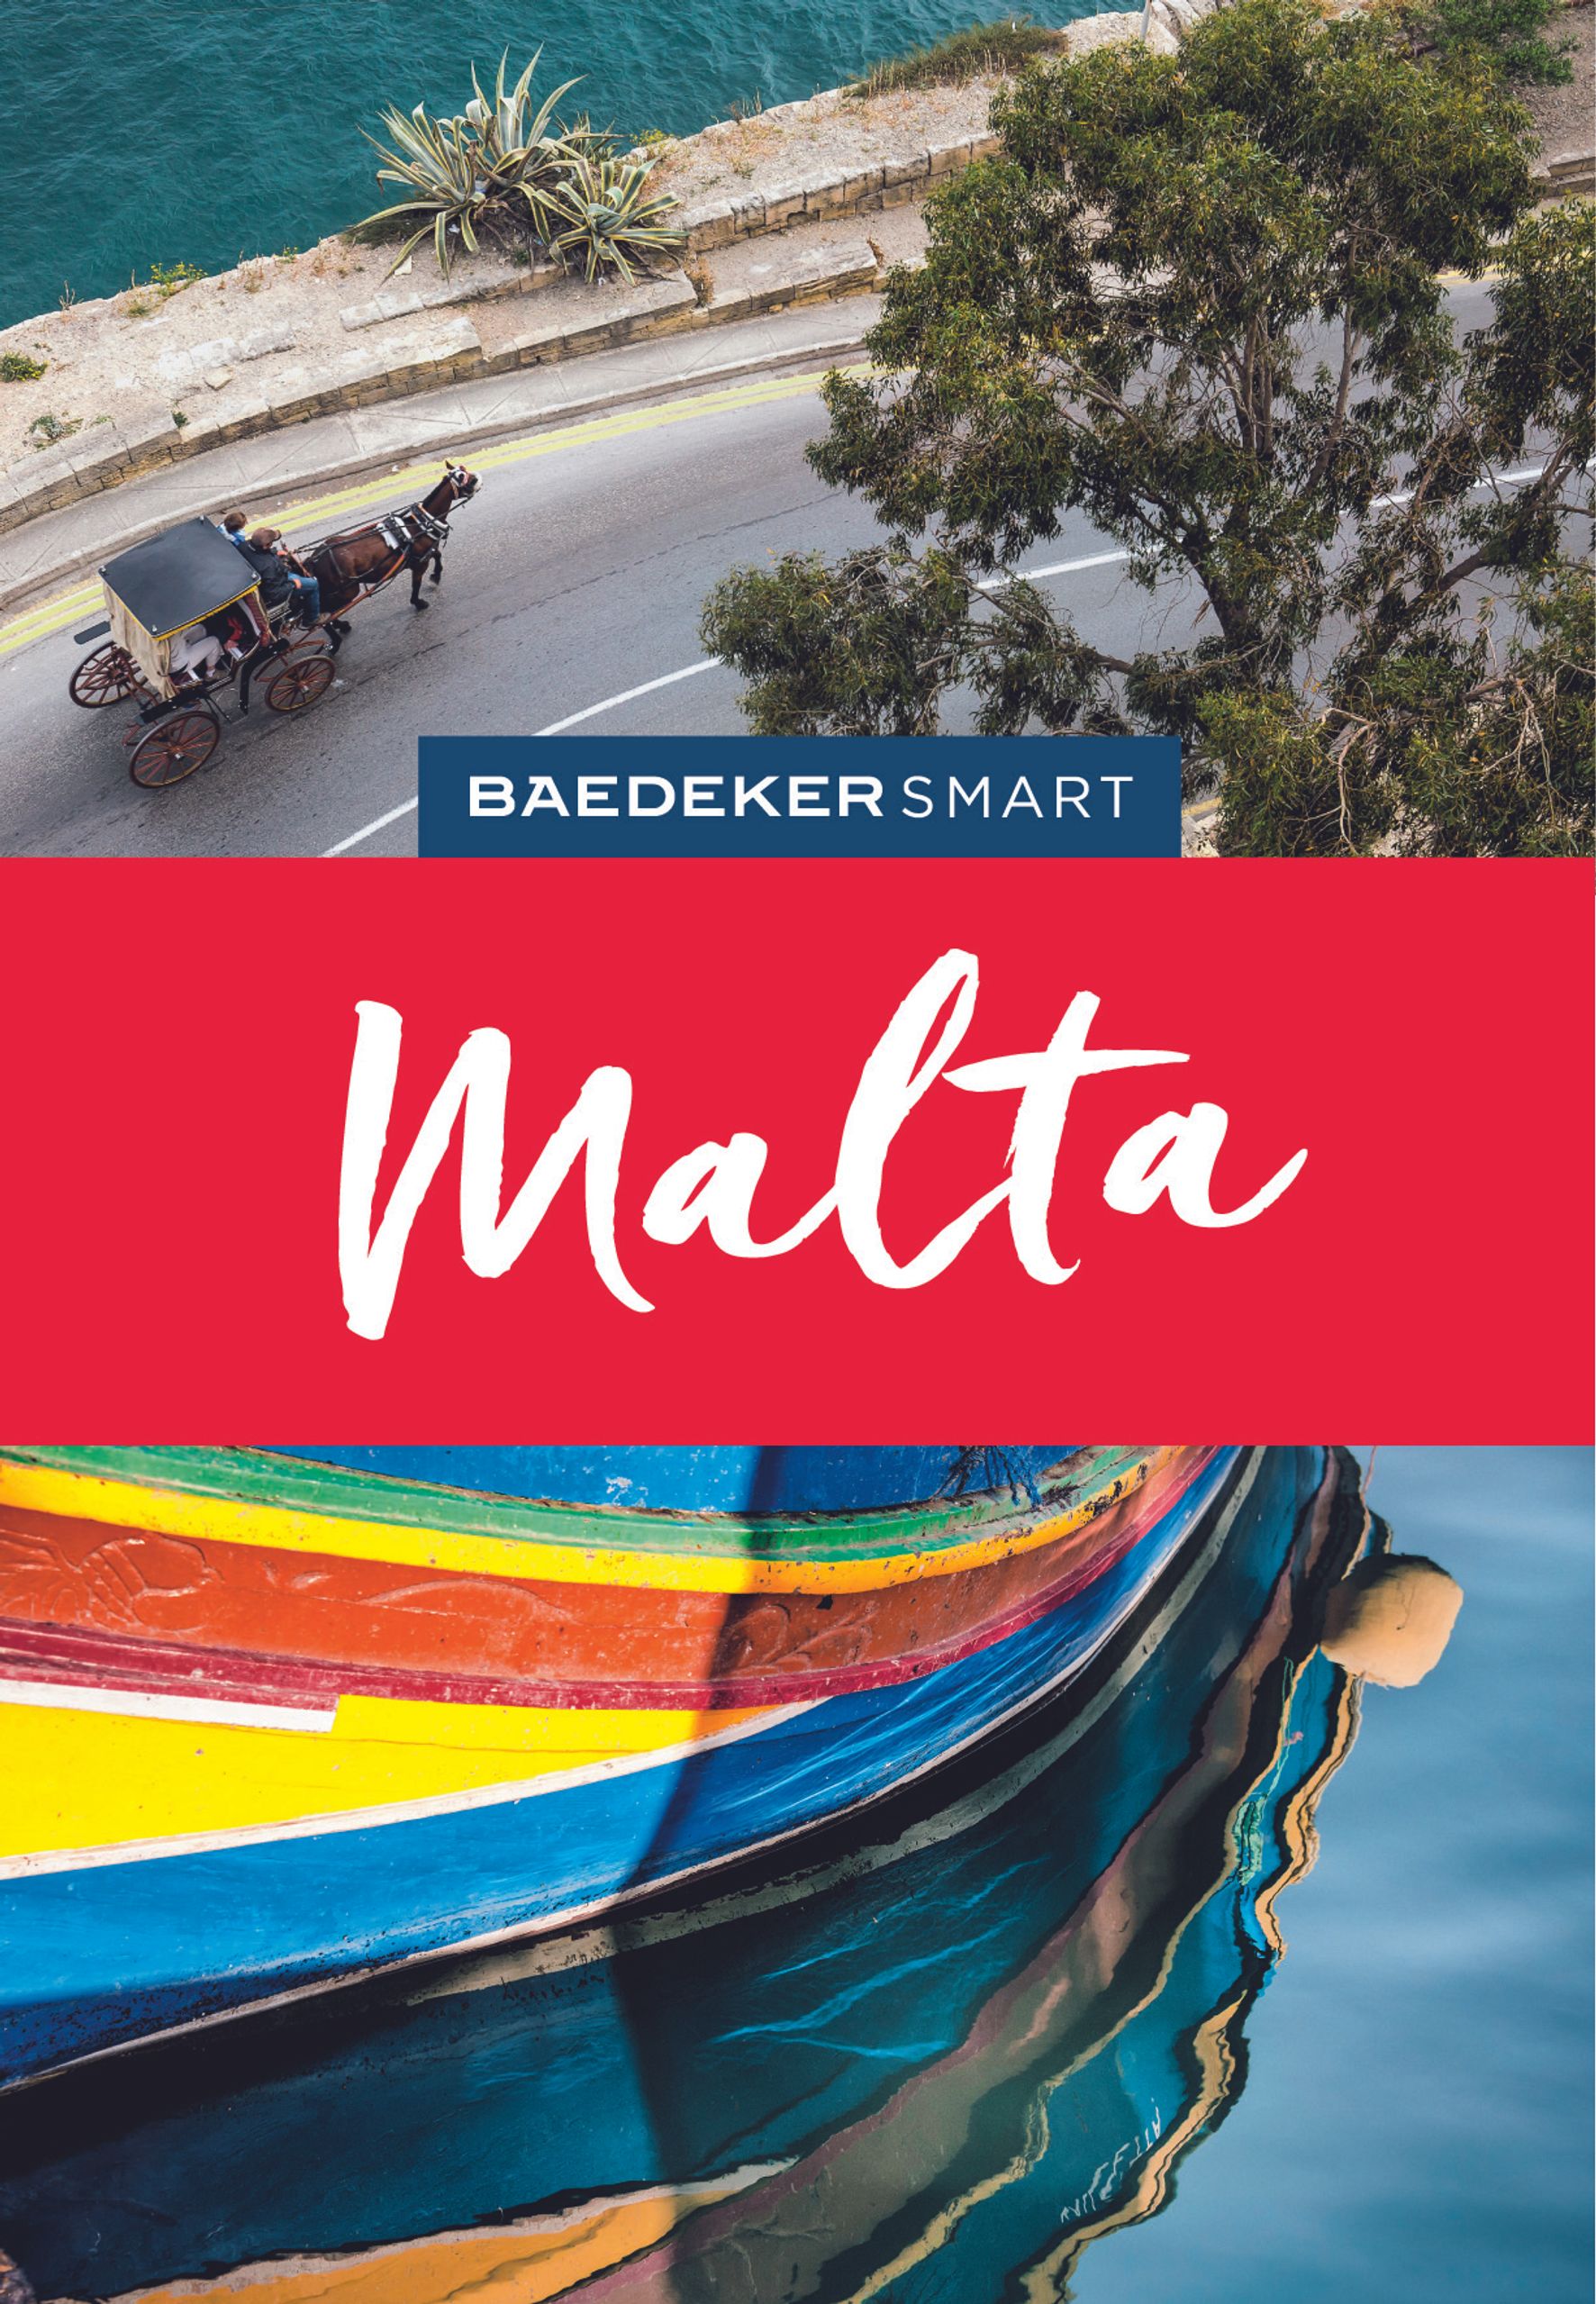 Baedeker Malta